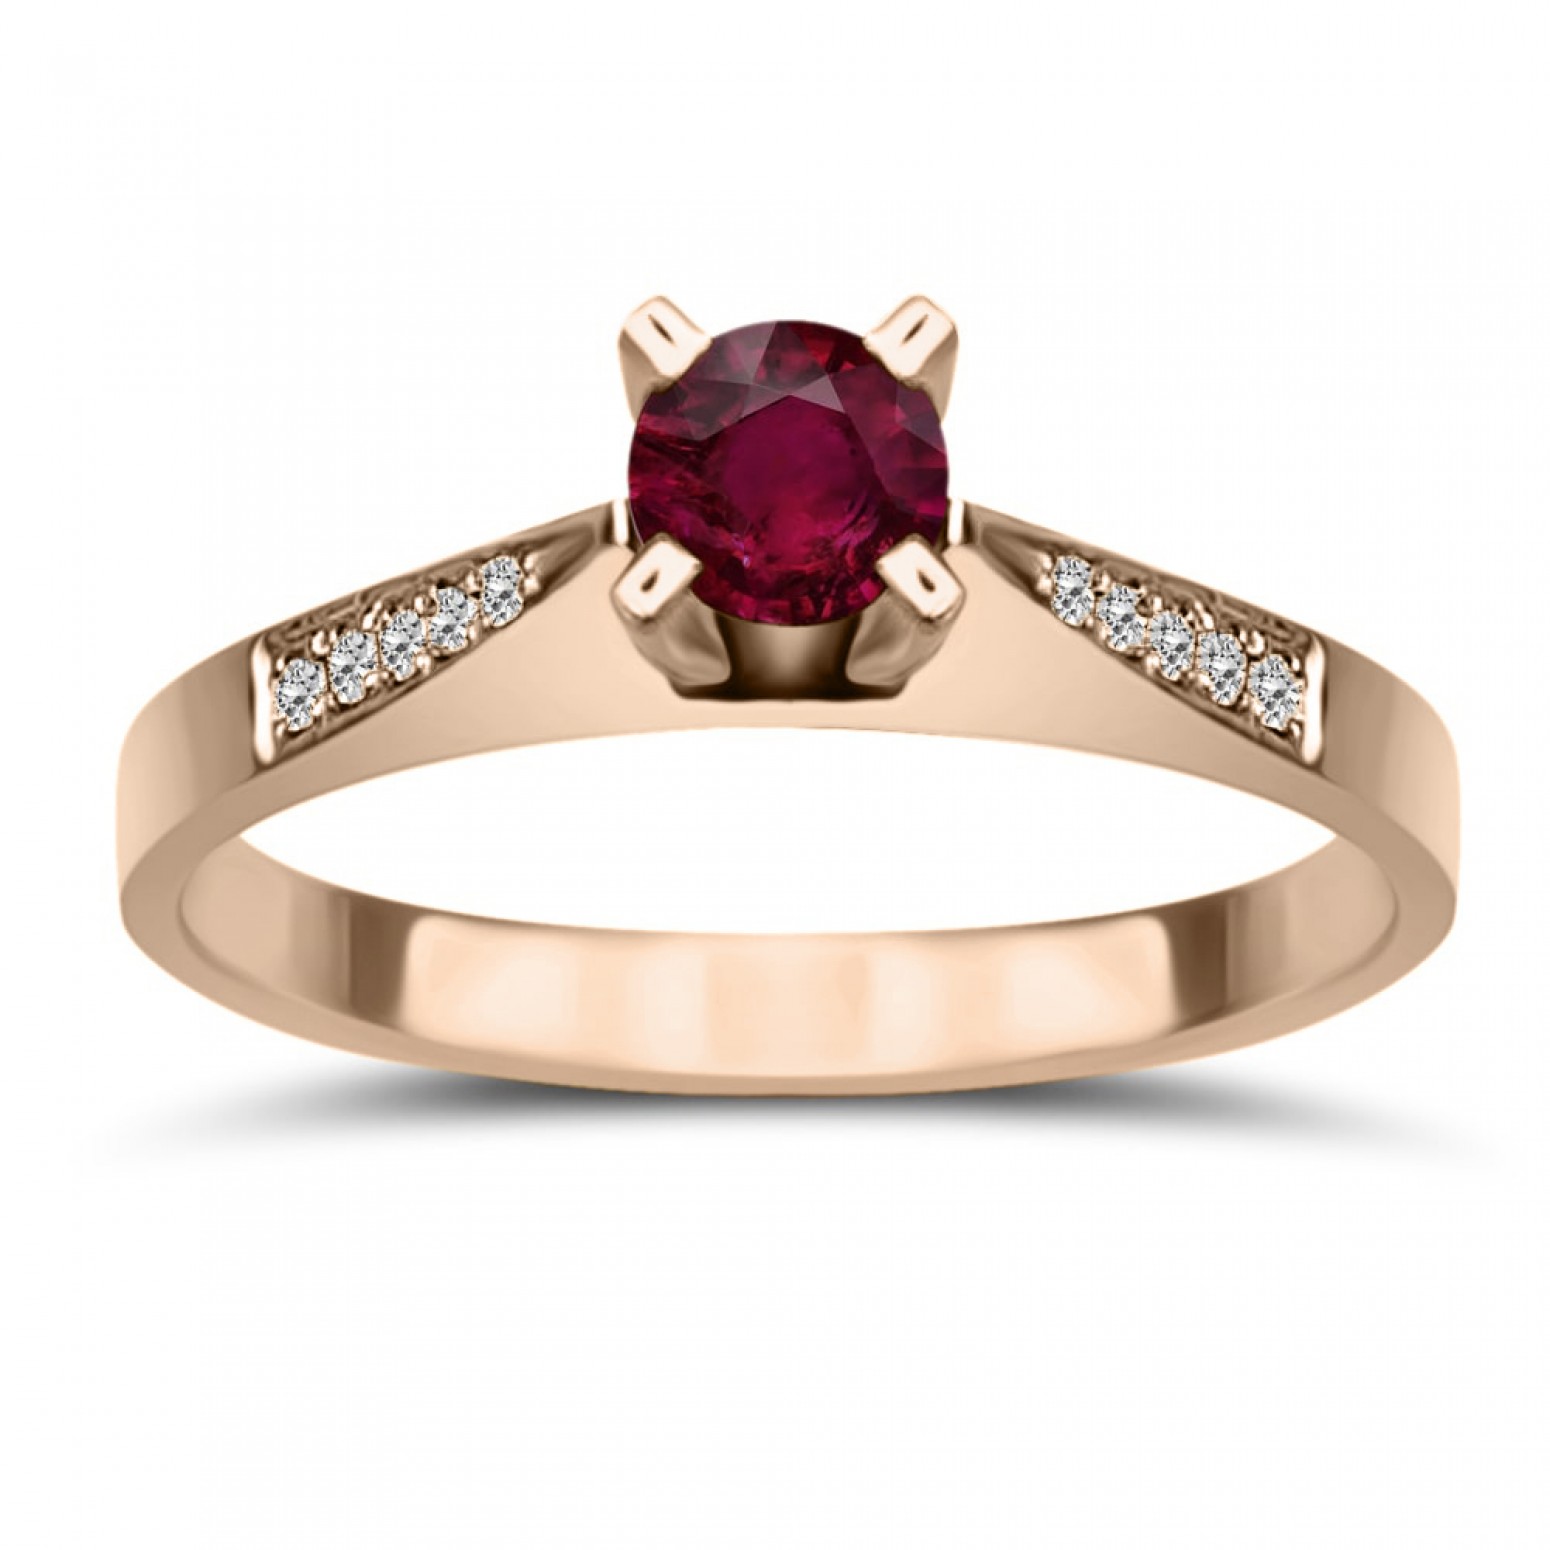 Μονόπετρο δαχτυλίδι Κ18 ροζ χρυσό με ρουμπίνι 0.29ct και διαμάντια VS1, G da3682 ΔΑΧΤΥΛΙΔΙΑ ΑΡΡΑΒΩΝΑ Κοσμηματα - chrilia.gr